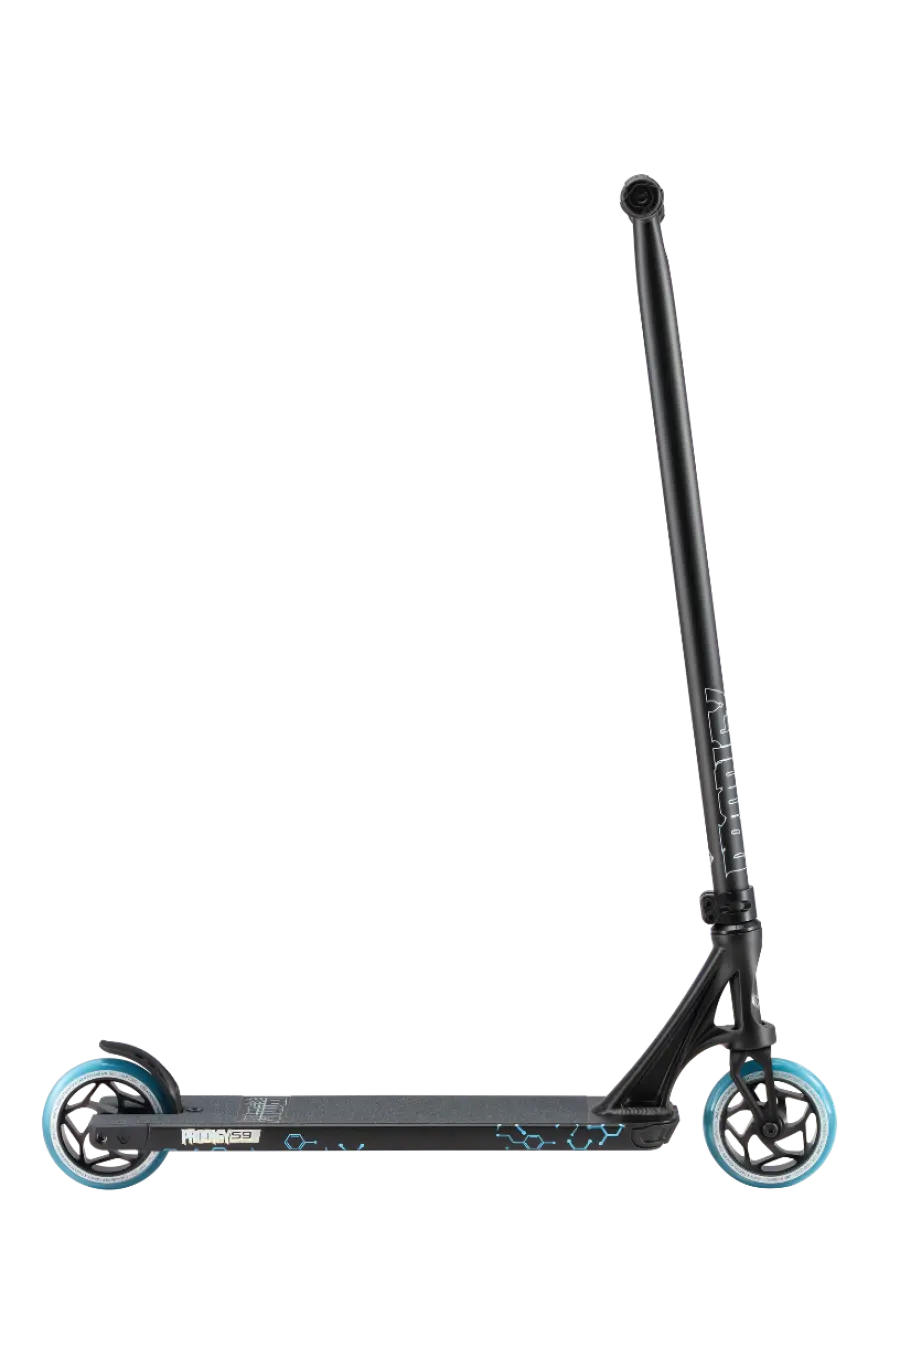 Envy Prodigy S9 Street Edition Pro Scooter - Black ENVY